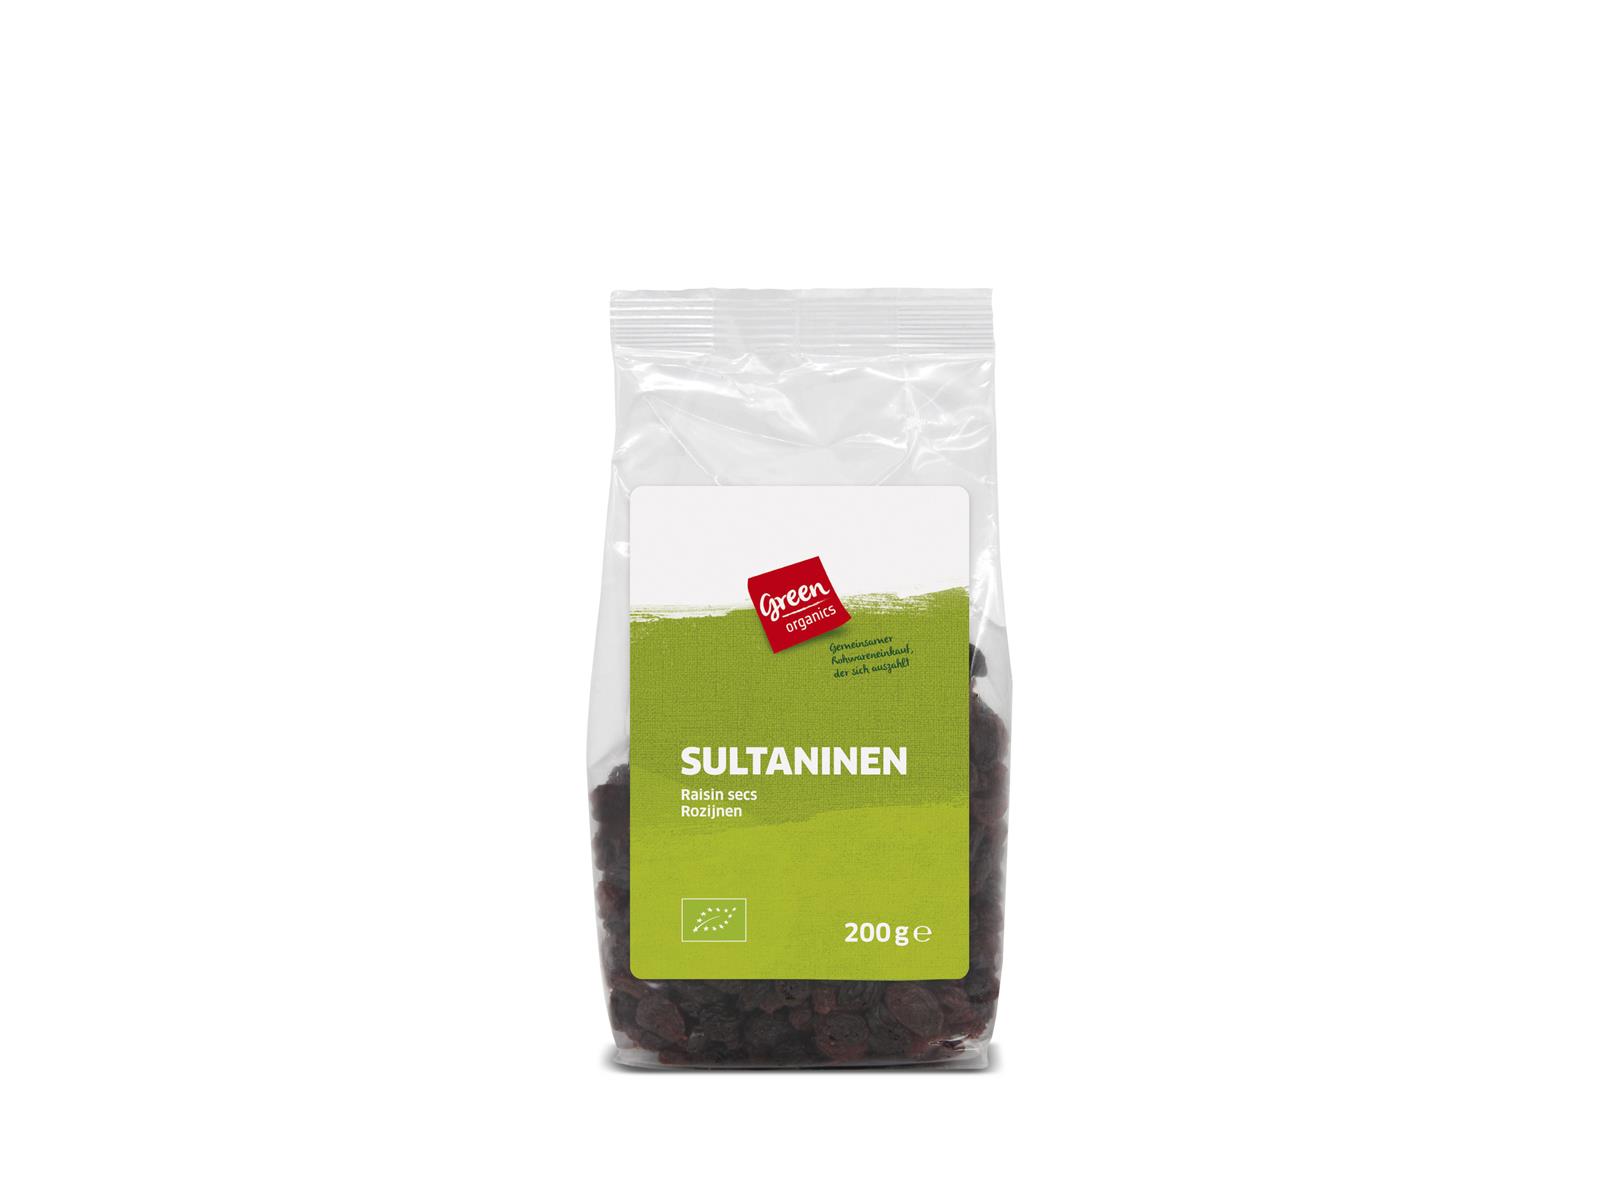 greenorganics Sultaninen 200g